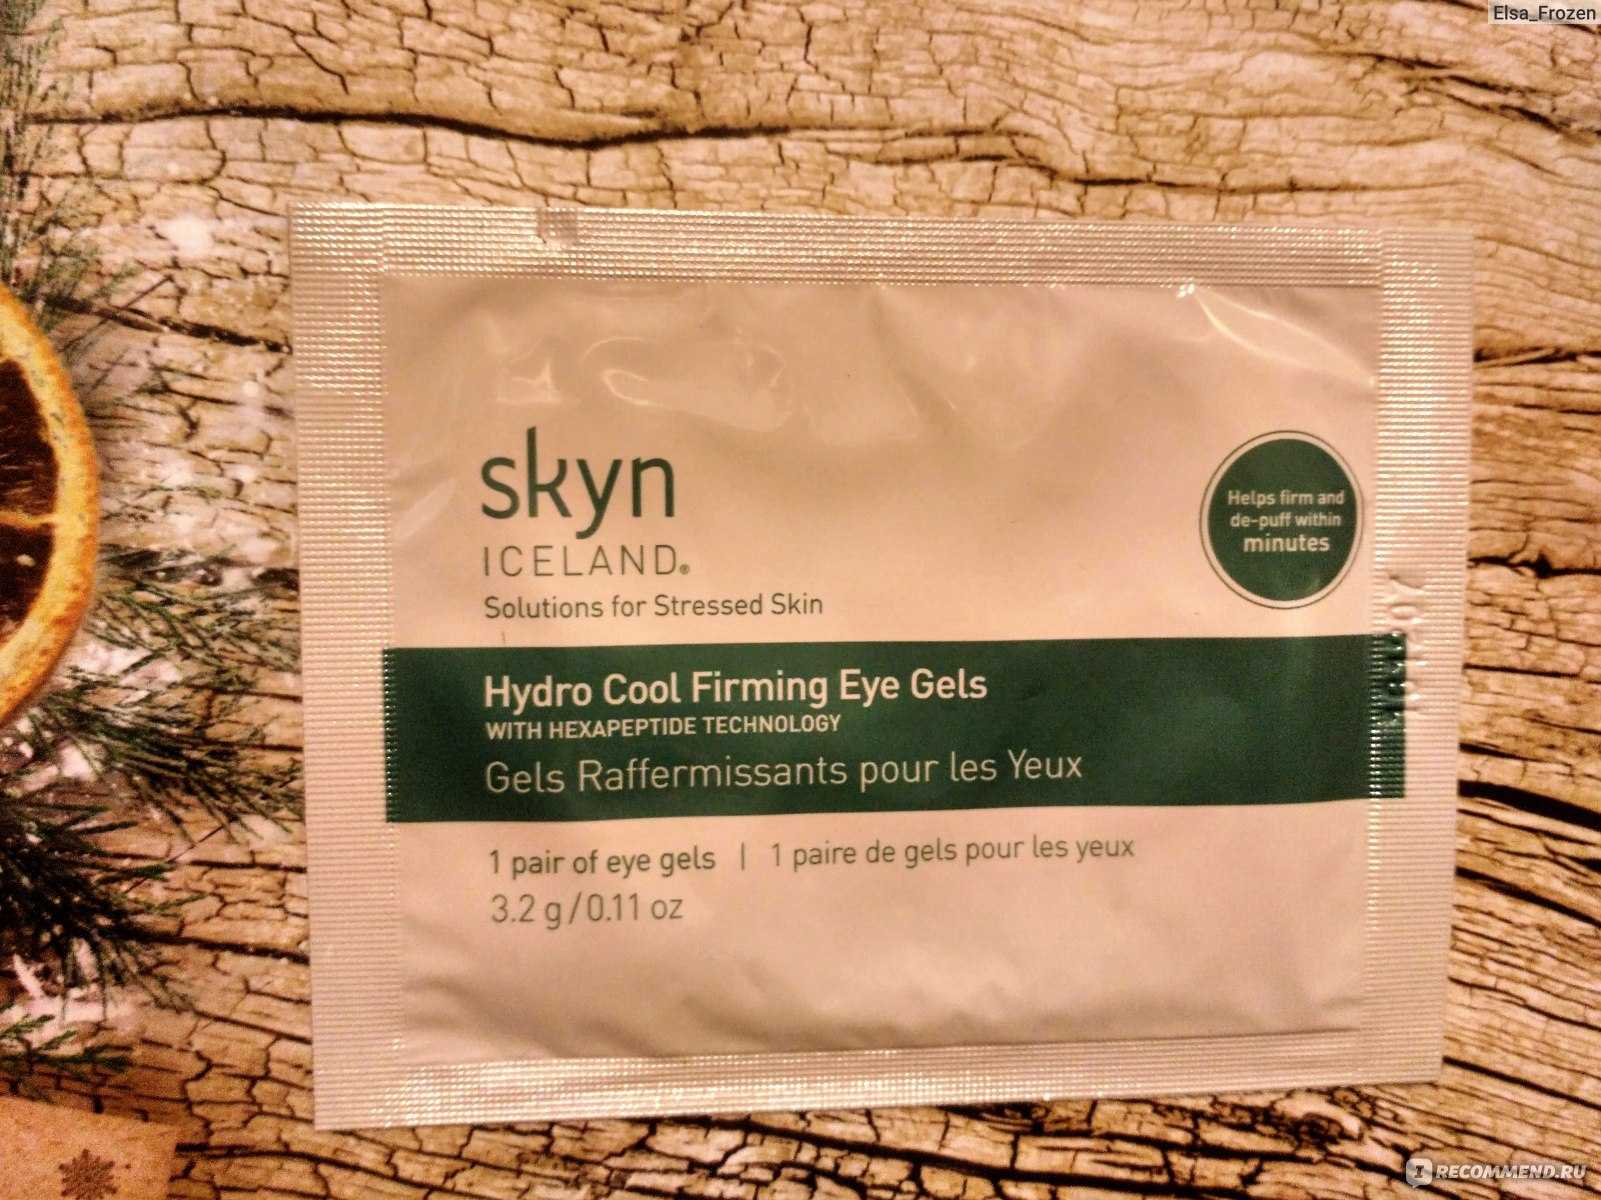 Hydro cool firming eye gels | skyn iceland